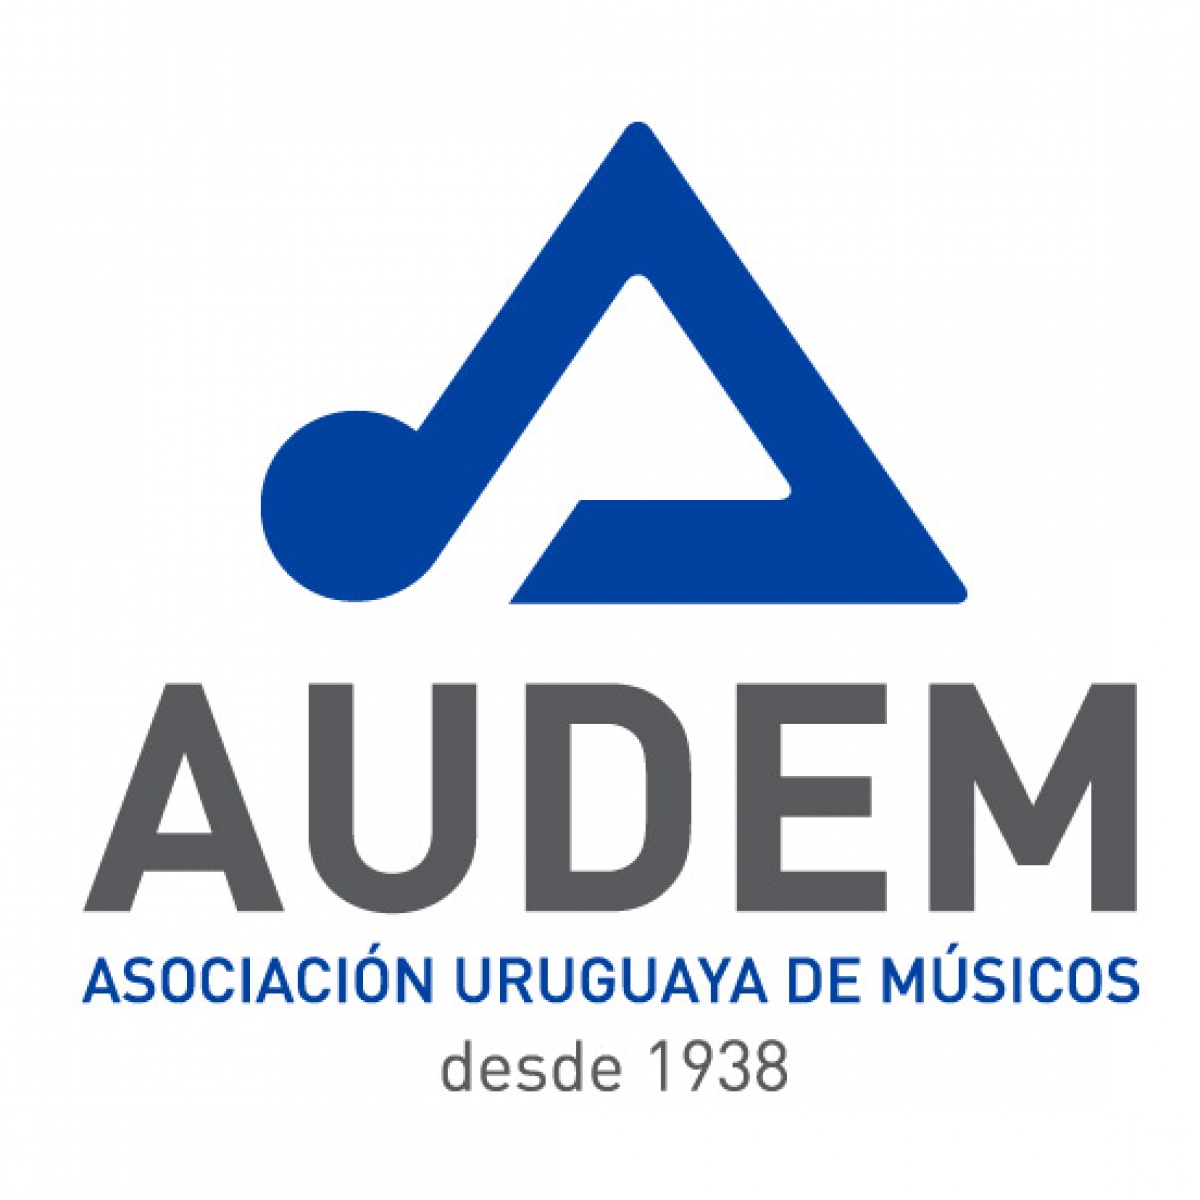 AUDEM | Asociación uruguaya de músicos